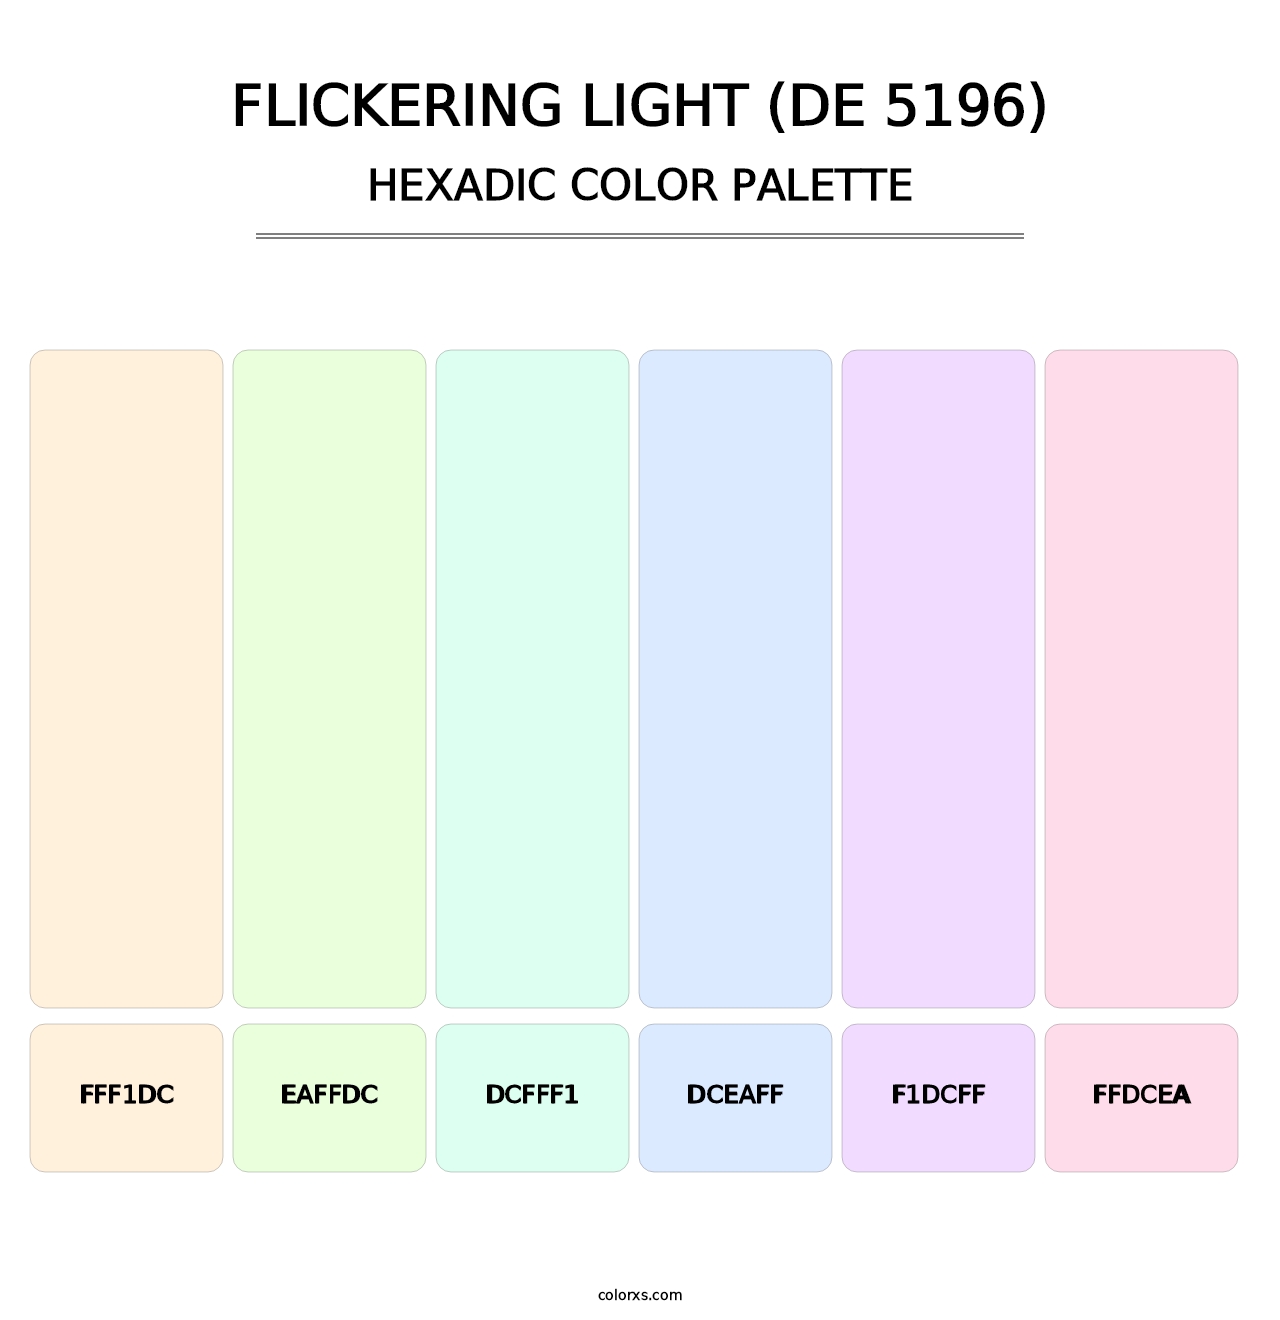 Flickering Light (DE 5196) - Hexadic Color Palette